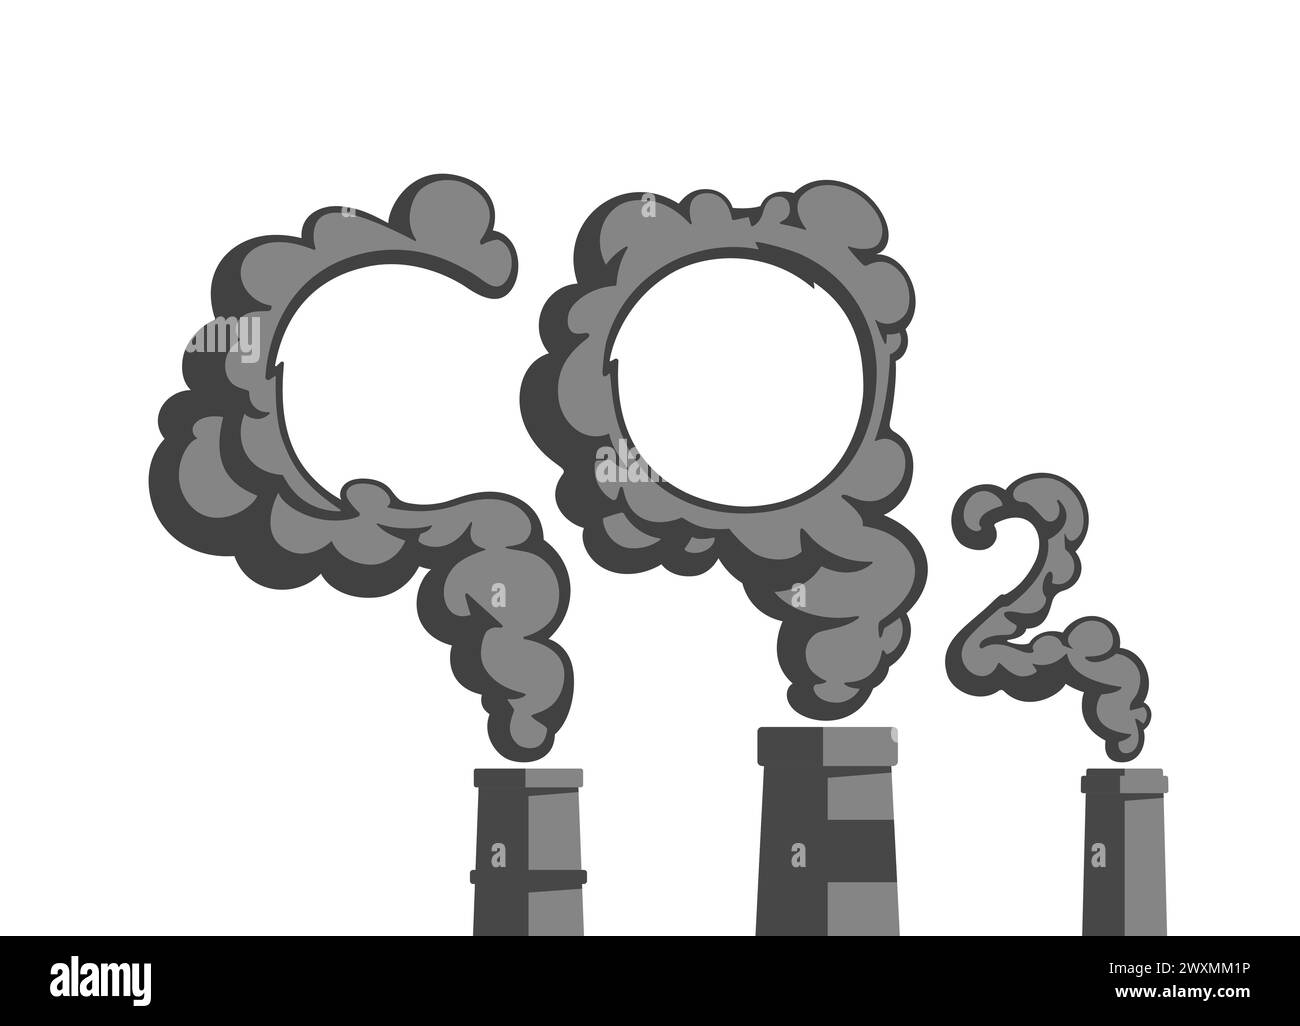 Kohlendioxidemissionen (CO2) aus Industrieanlagen. Fabrikschornsteine. Umweltverschmutzungskonzept. Illustration des flachen Vektors. Stock Vektor